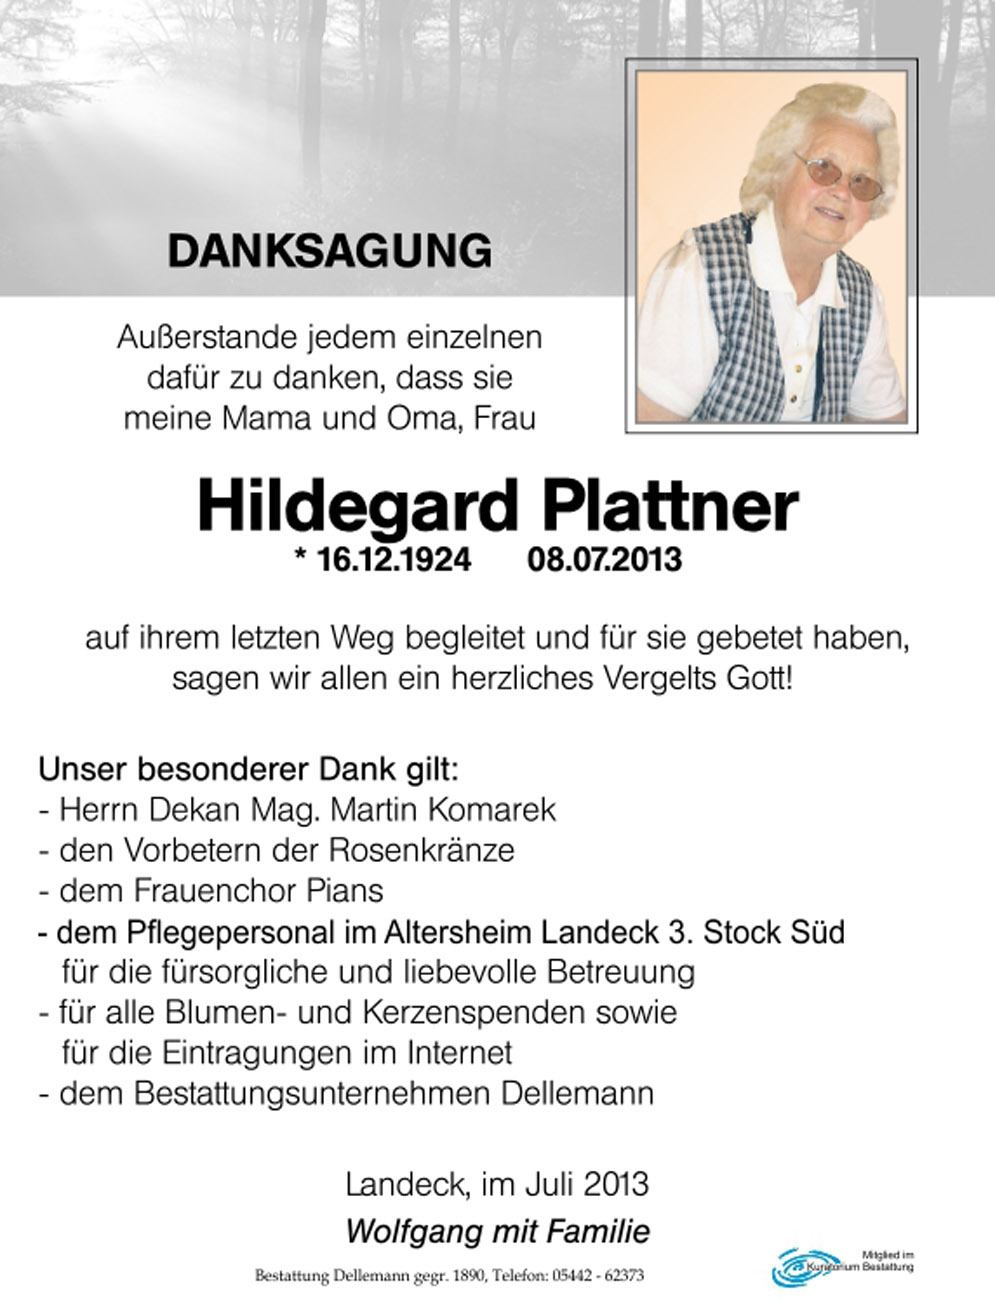 Hildegard Plattner 